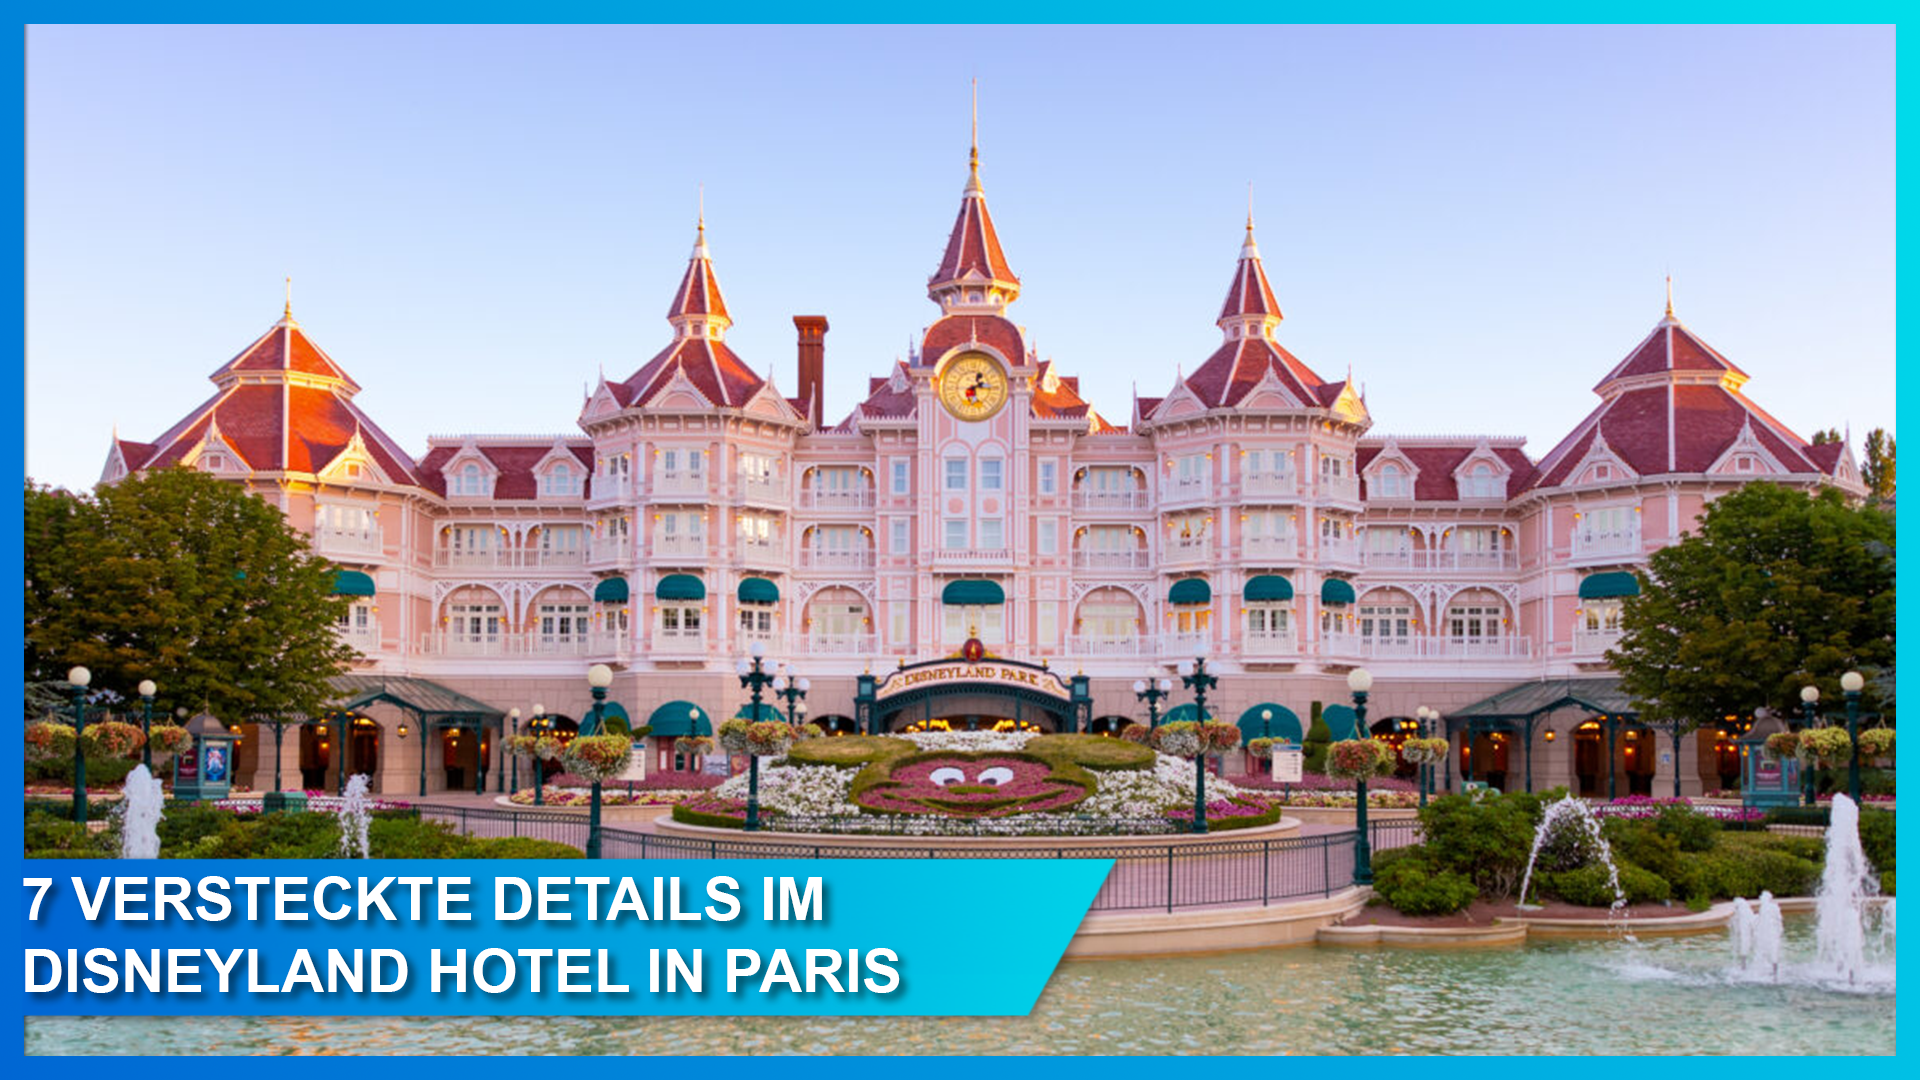 Die 7 beeindruckendsten versteckten Details der Disney Imagineers im brandneuen Disneyland Hotel in Paris